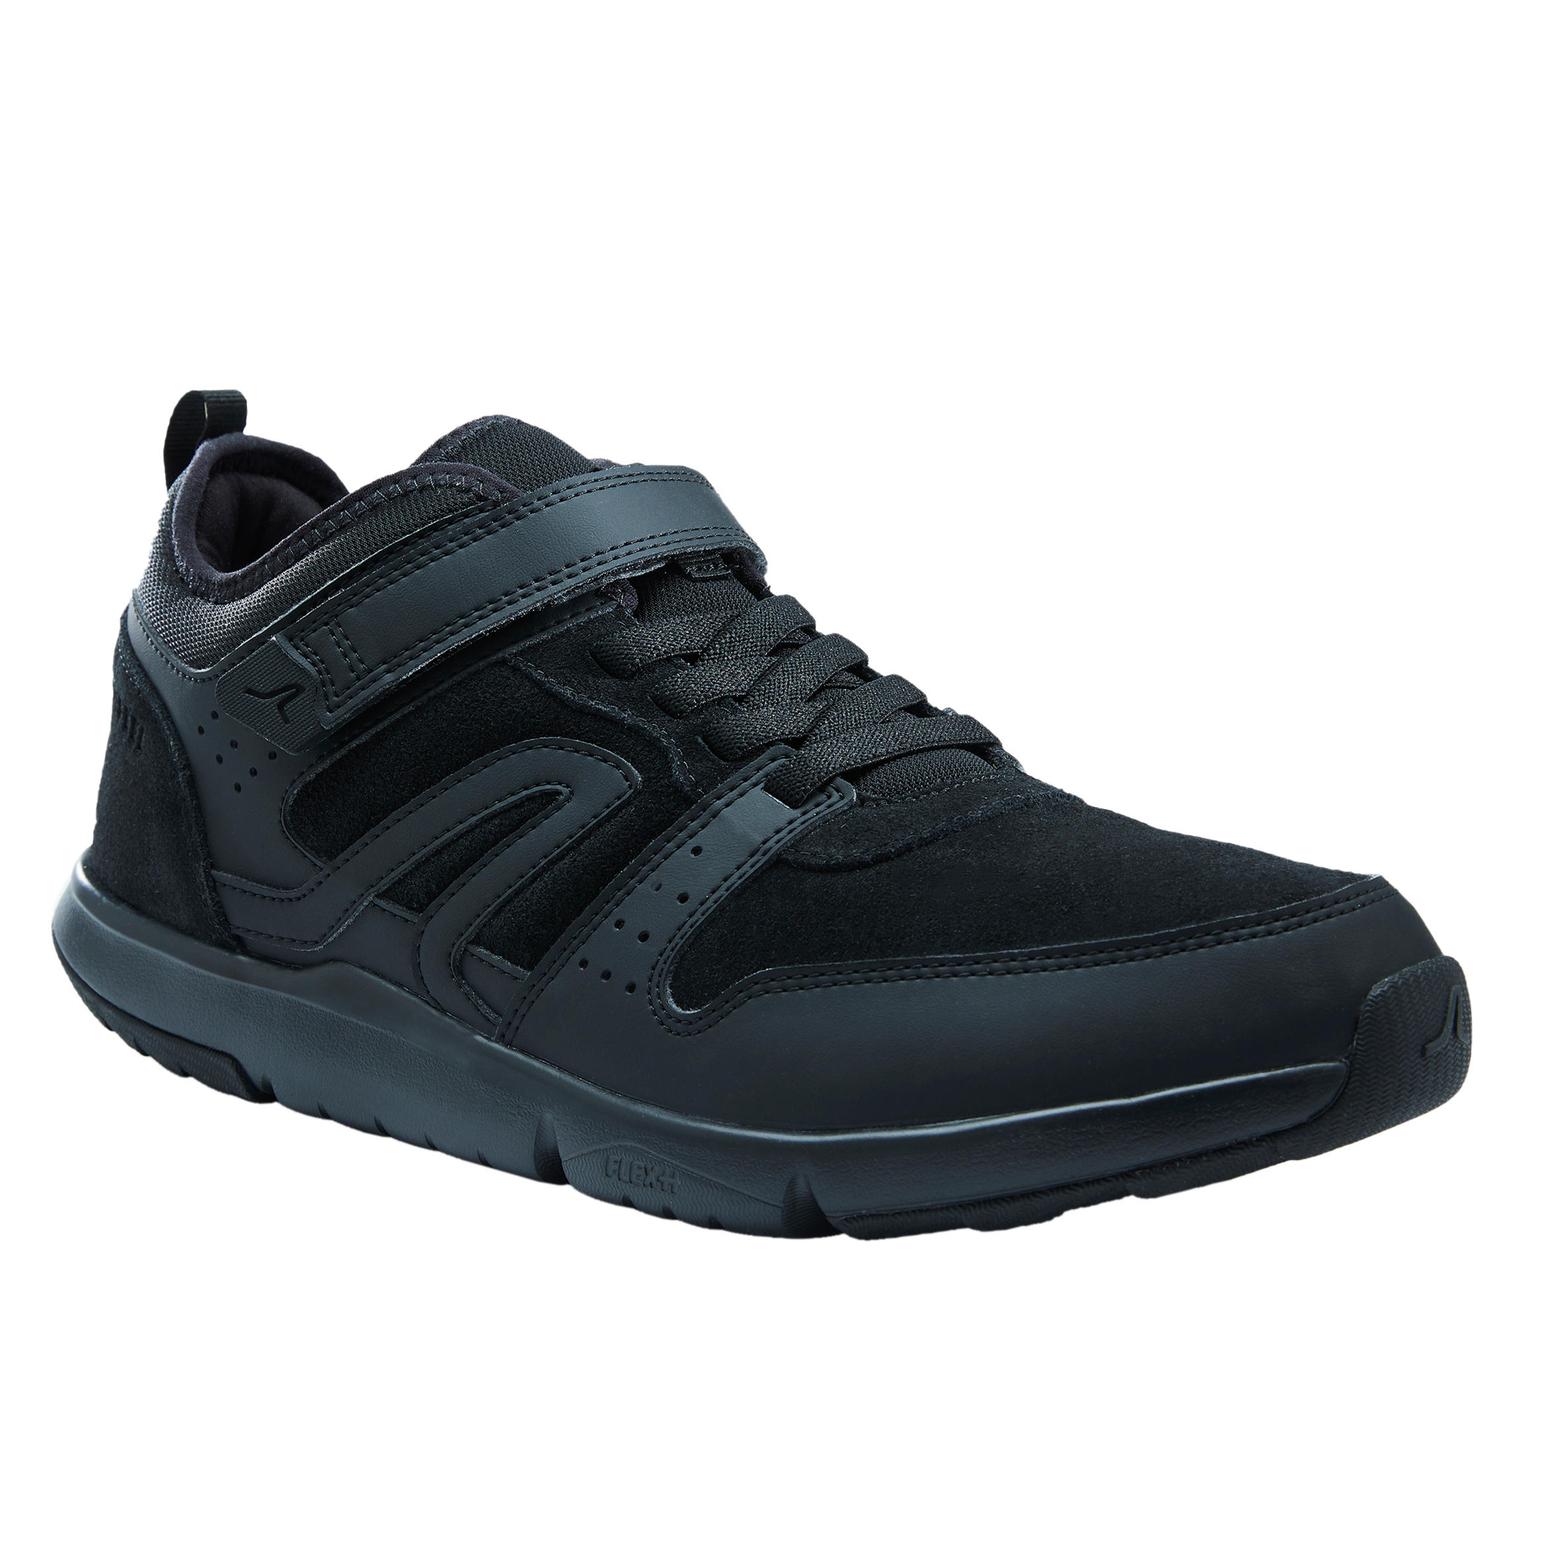 Chaussures cuir marche urbaine homme Actiwalk Easy Leather noir offre à 369 Dh sur Decathlon